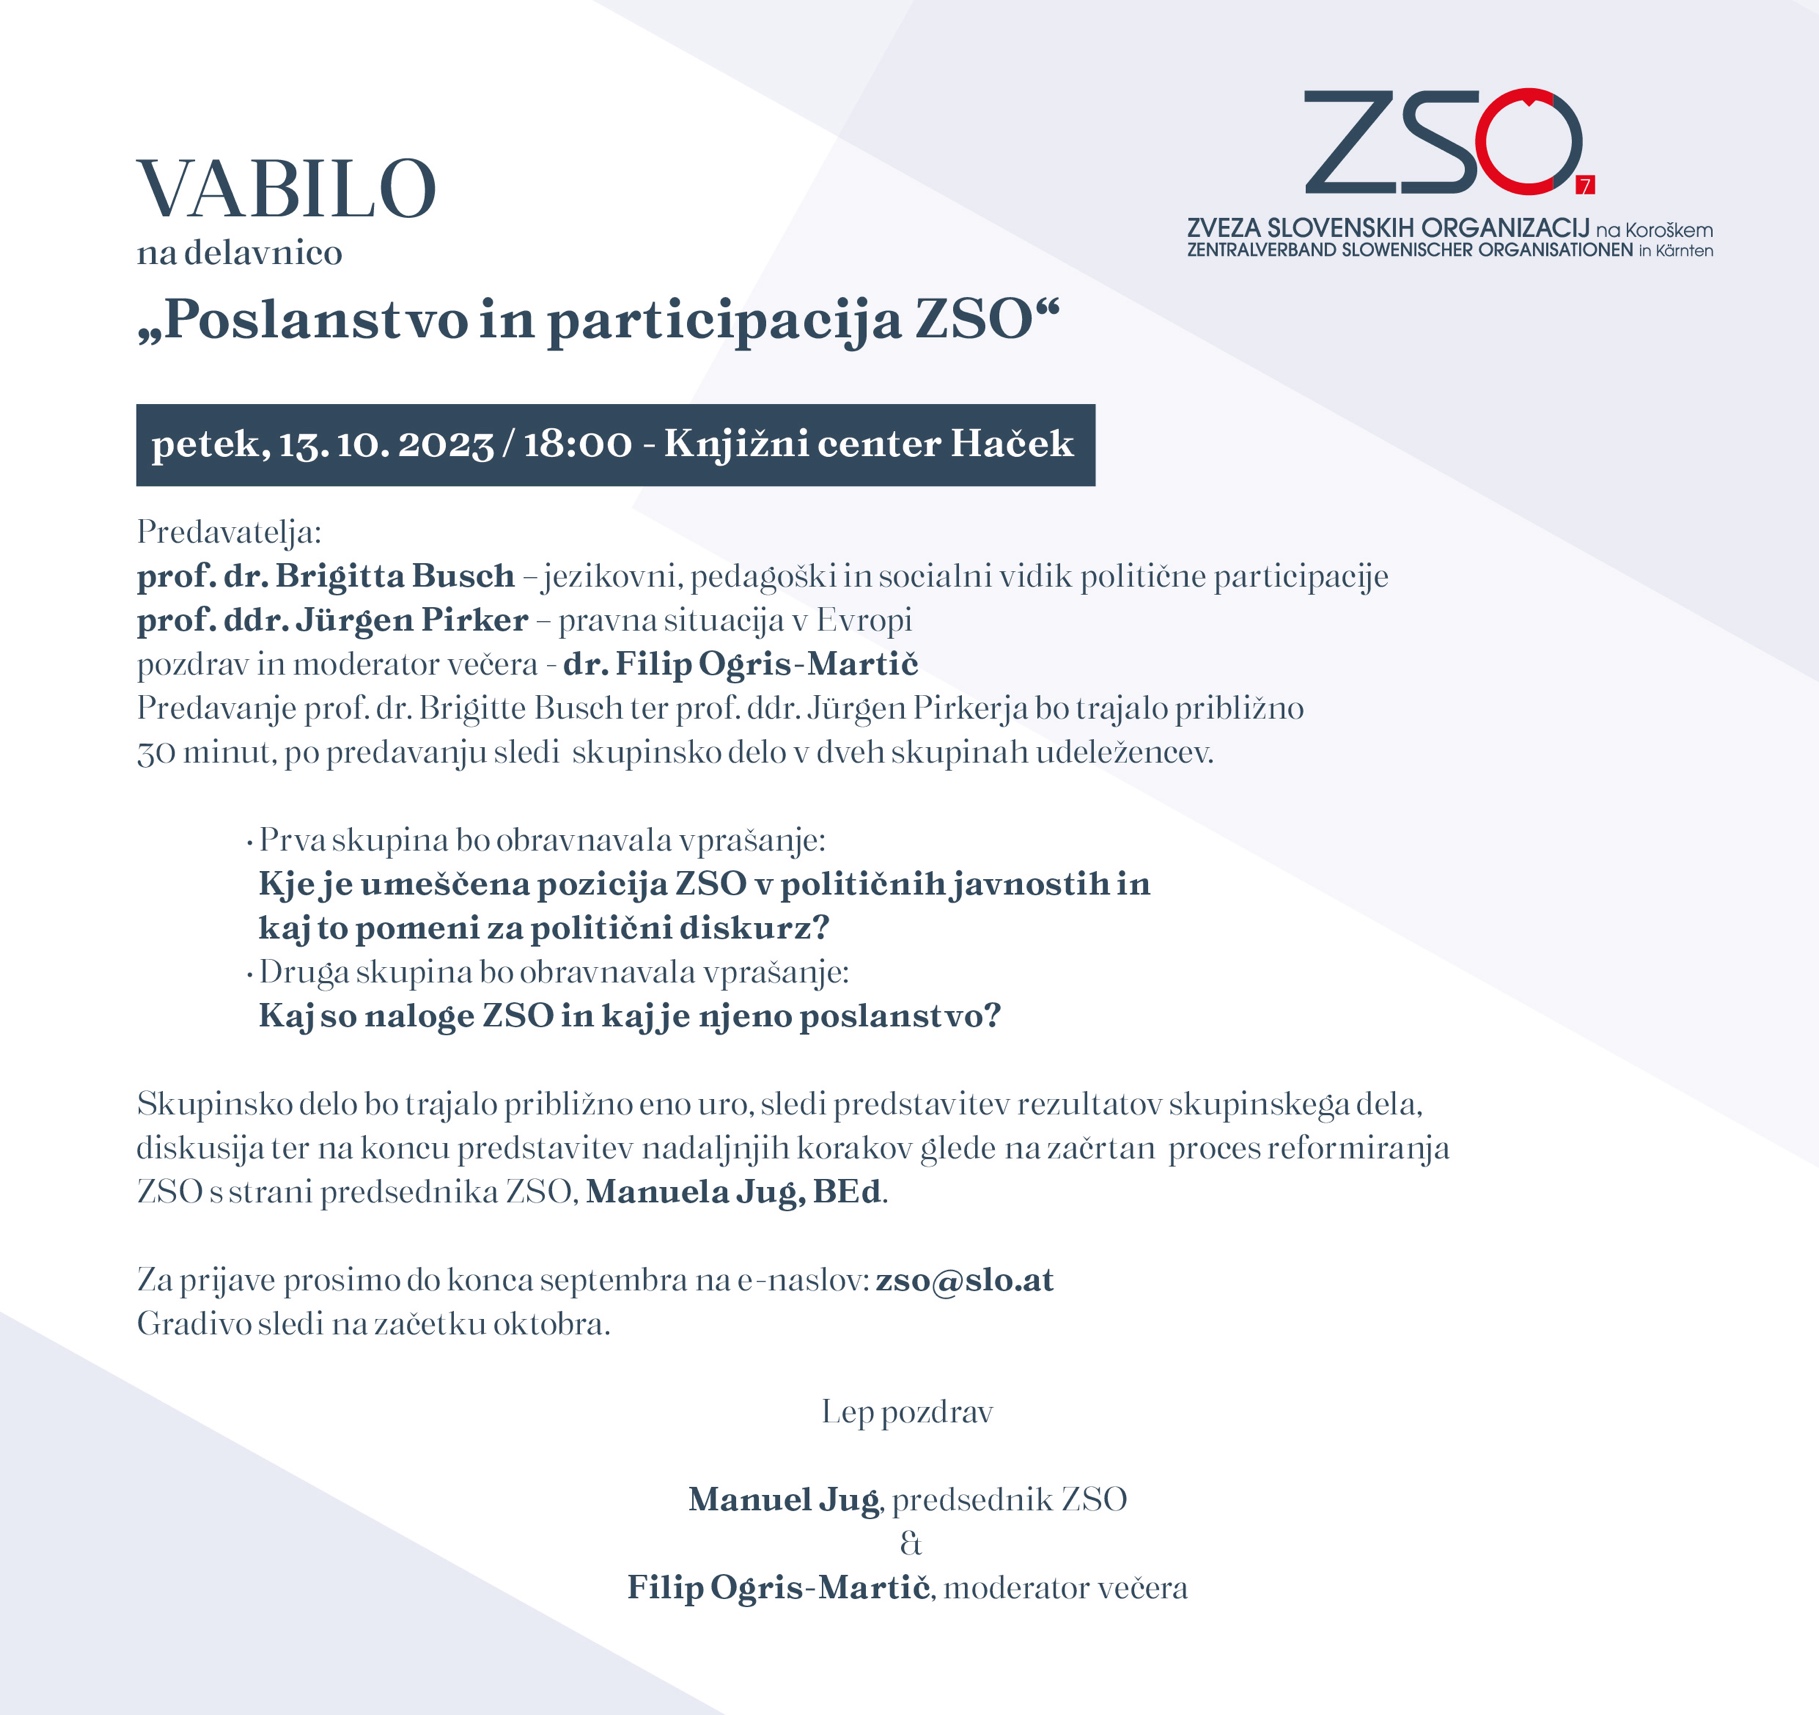 Poslanstvo in participacija  ZSO (prireditev in delavnica)